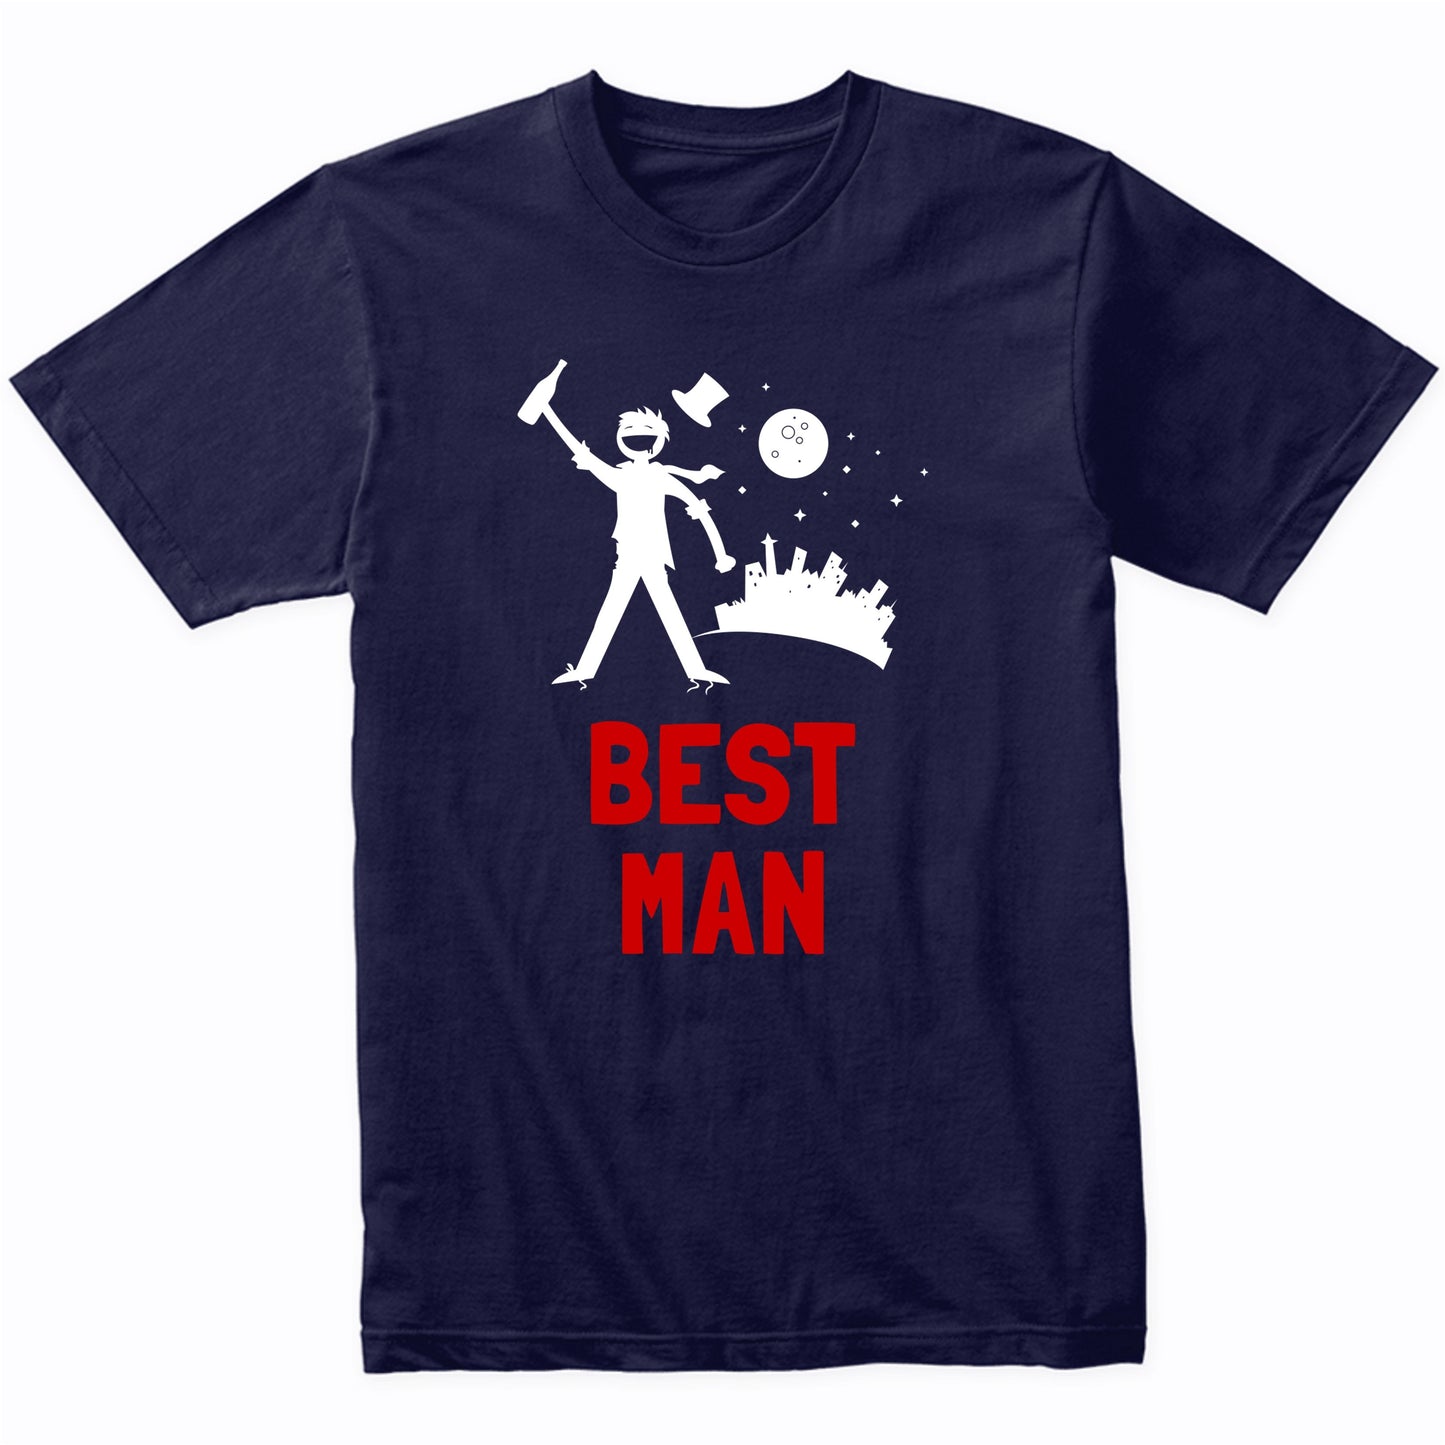 Best Man Shirt - Bachelor Party Drinking T-Shirt